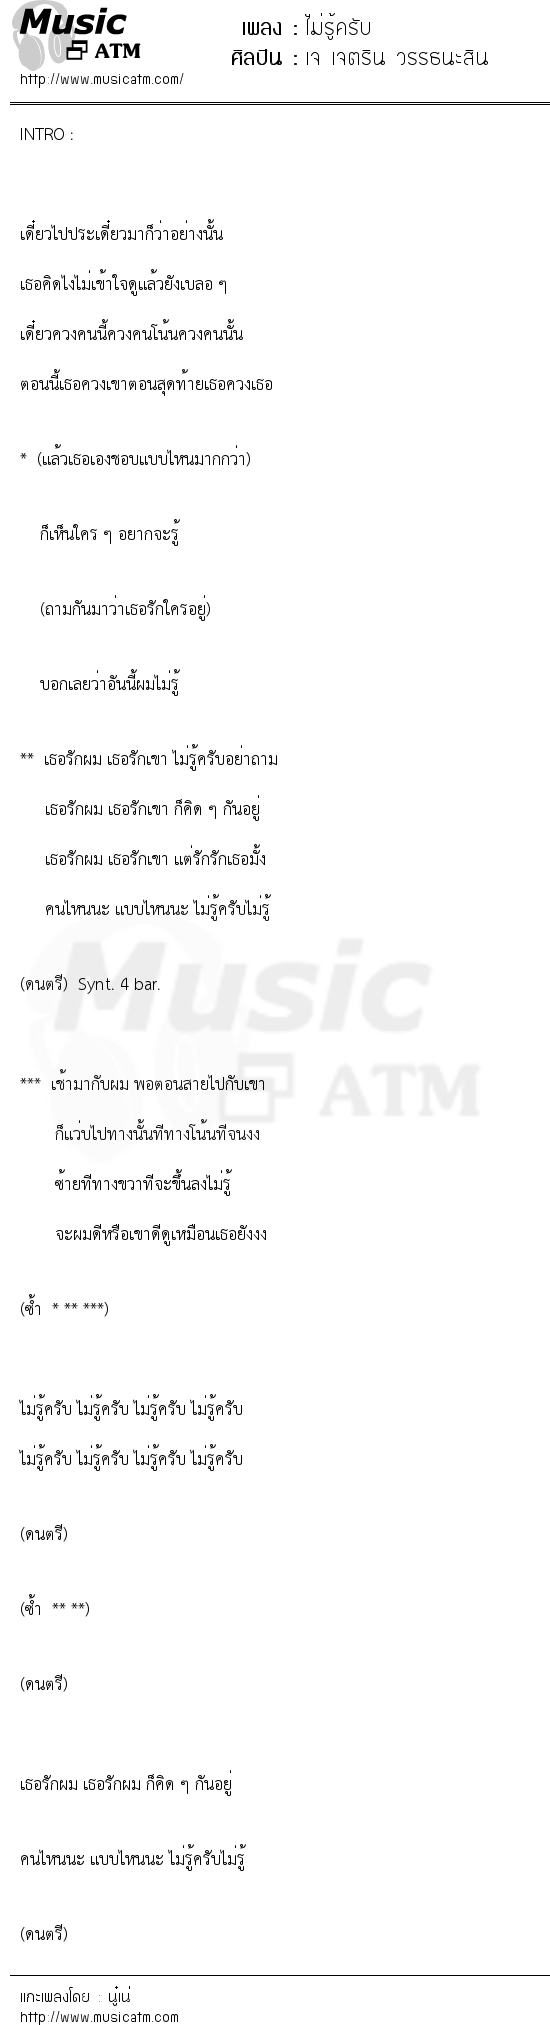 เนื้อเพลง ไม่รู้ครับ - เจ เจตริน วรรธนะสิน | เพลงไทย